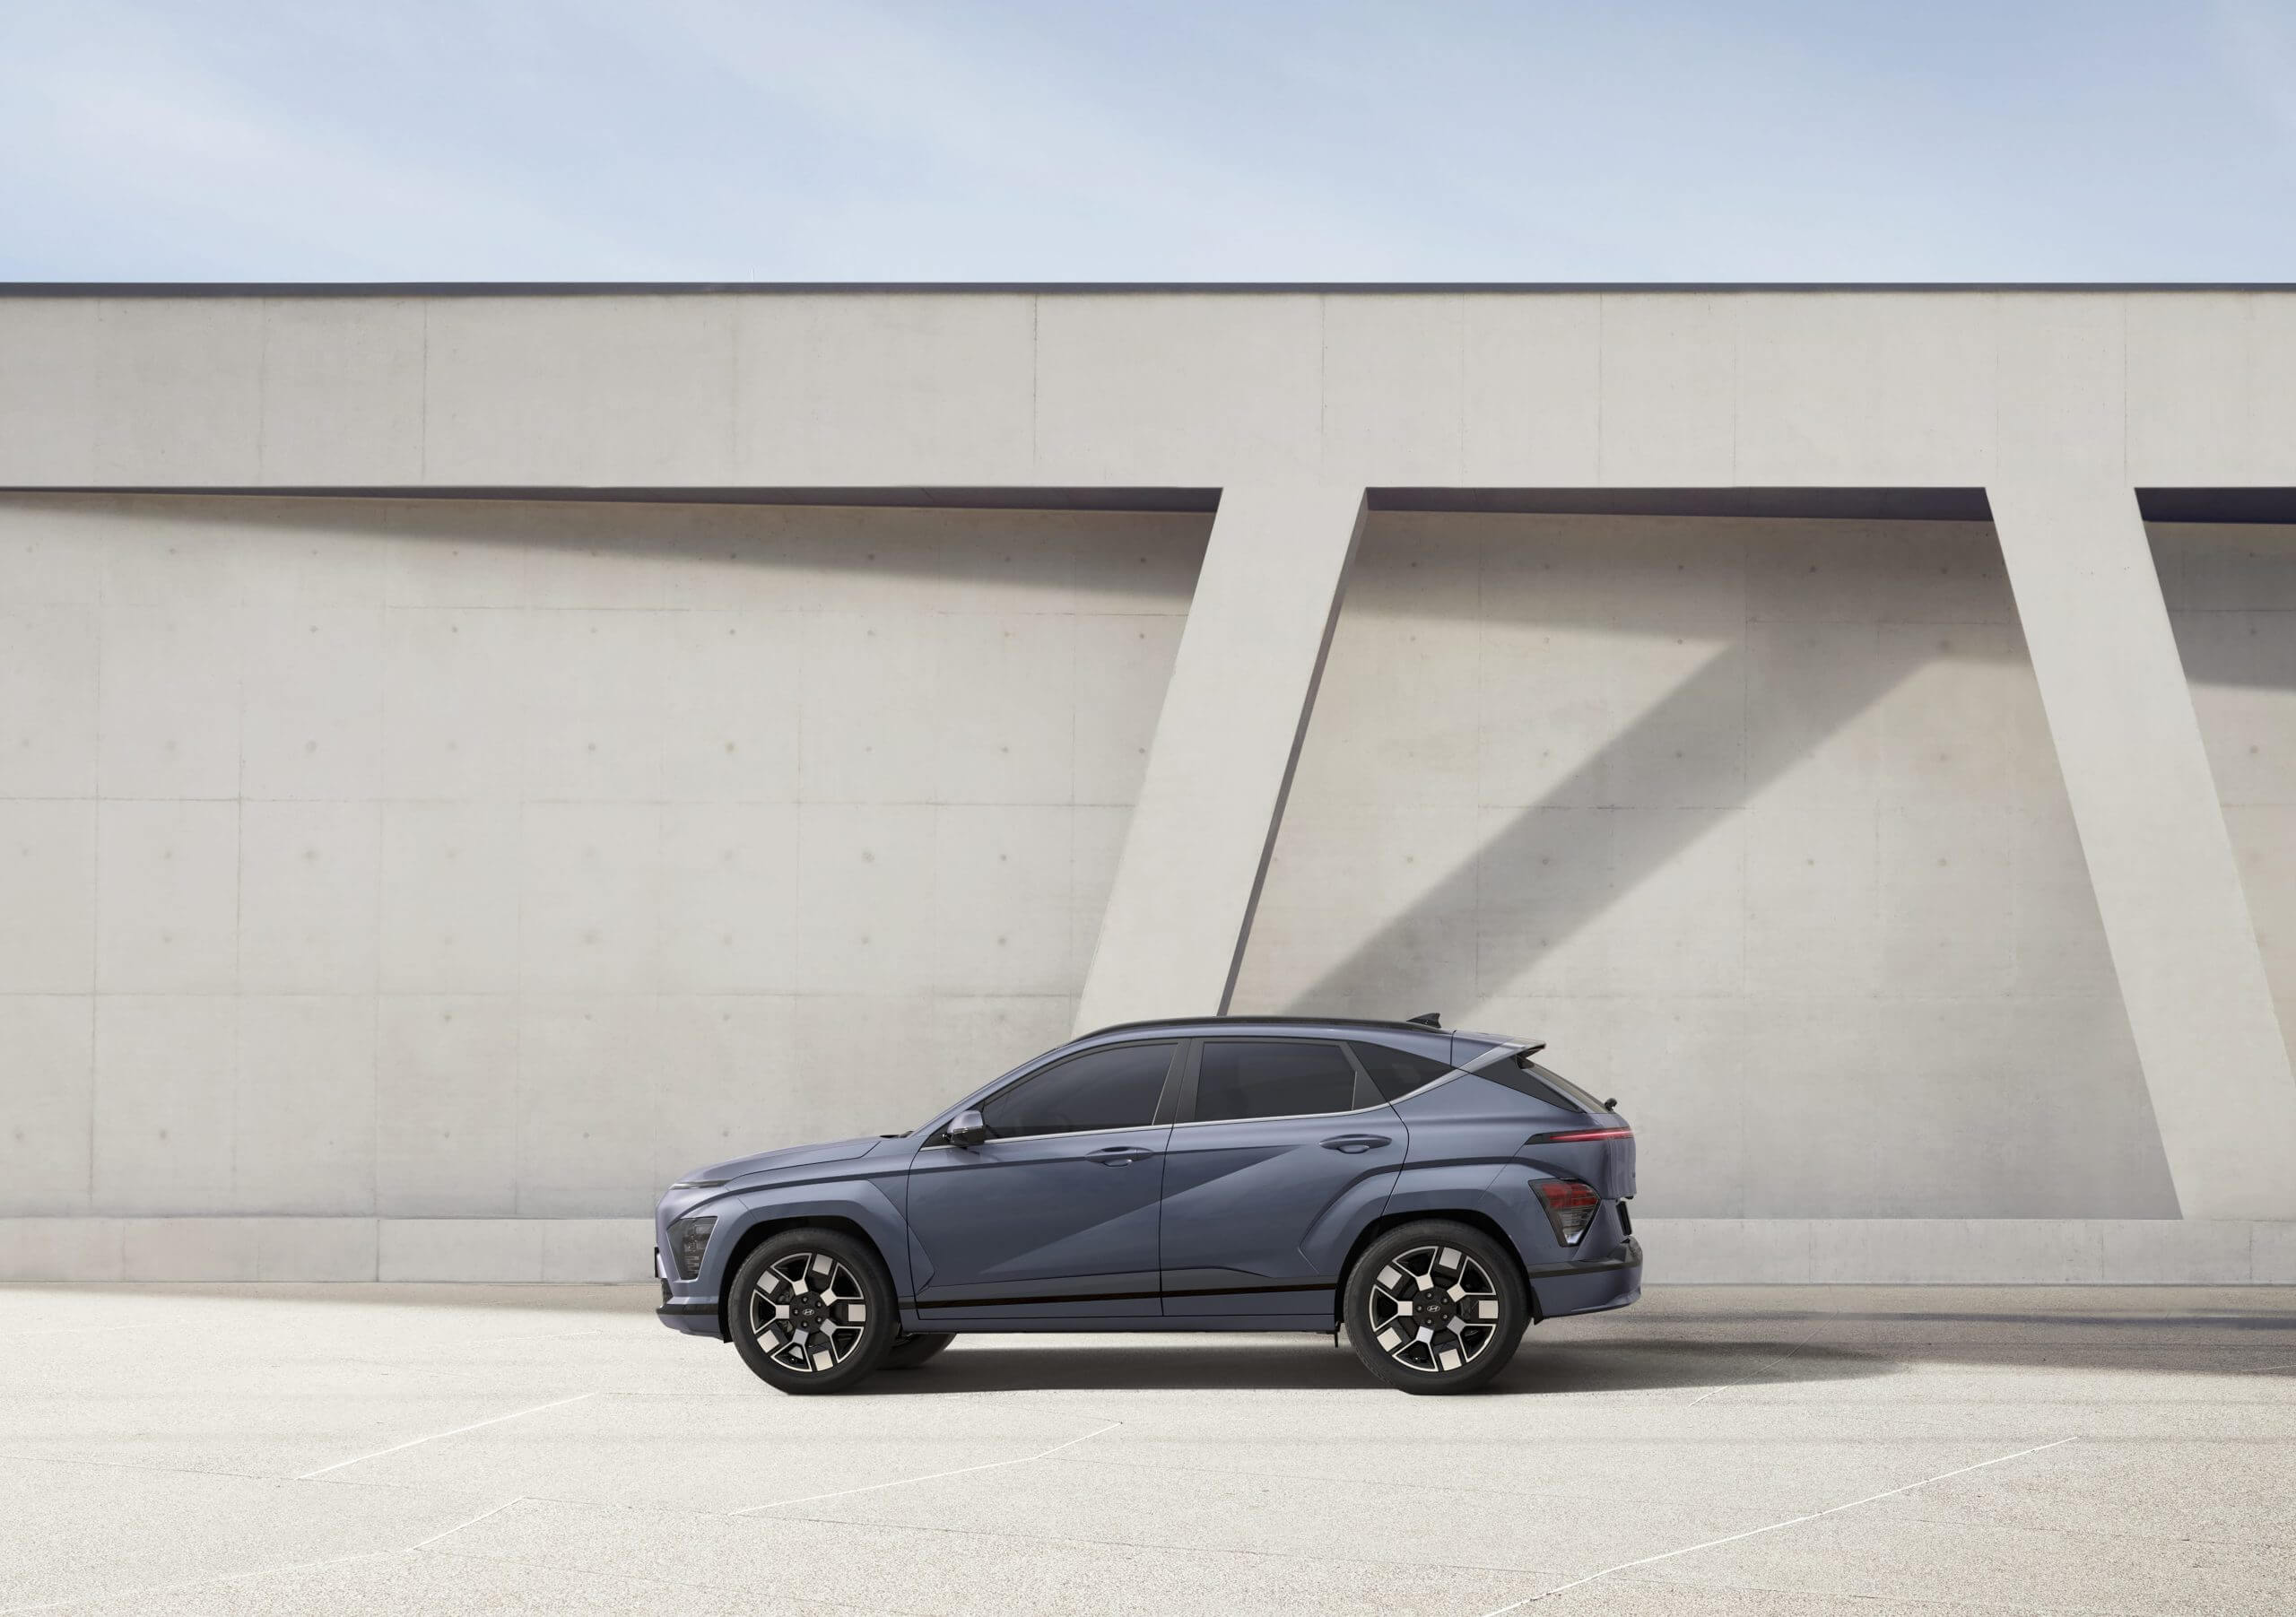 Hyundai yeni nesil Kona EV’yi tanıttı, ancak hayal gücüne çok şey bırakıyor